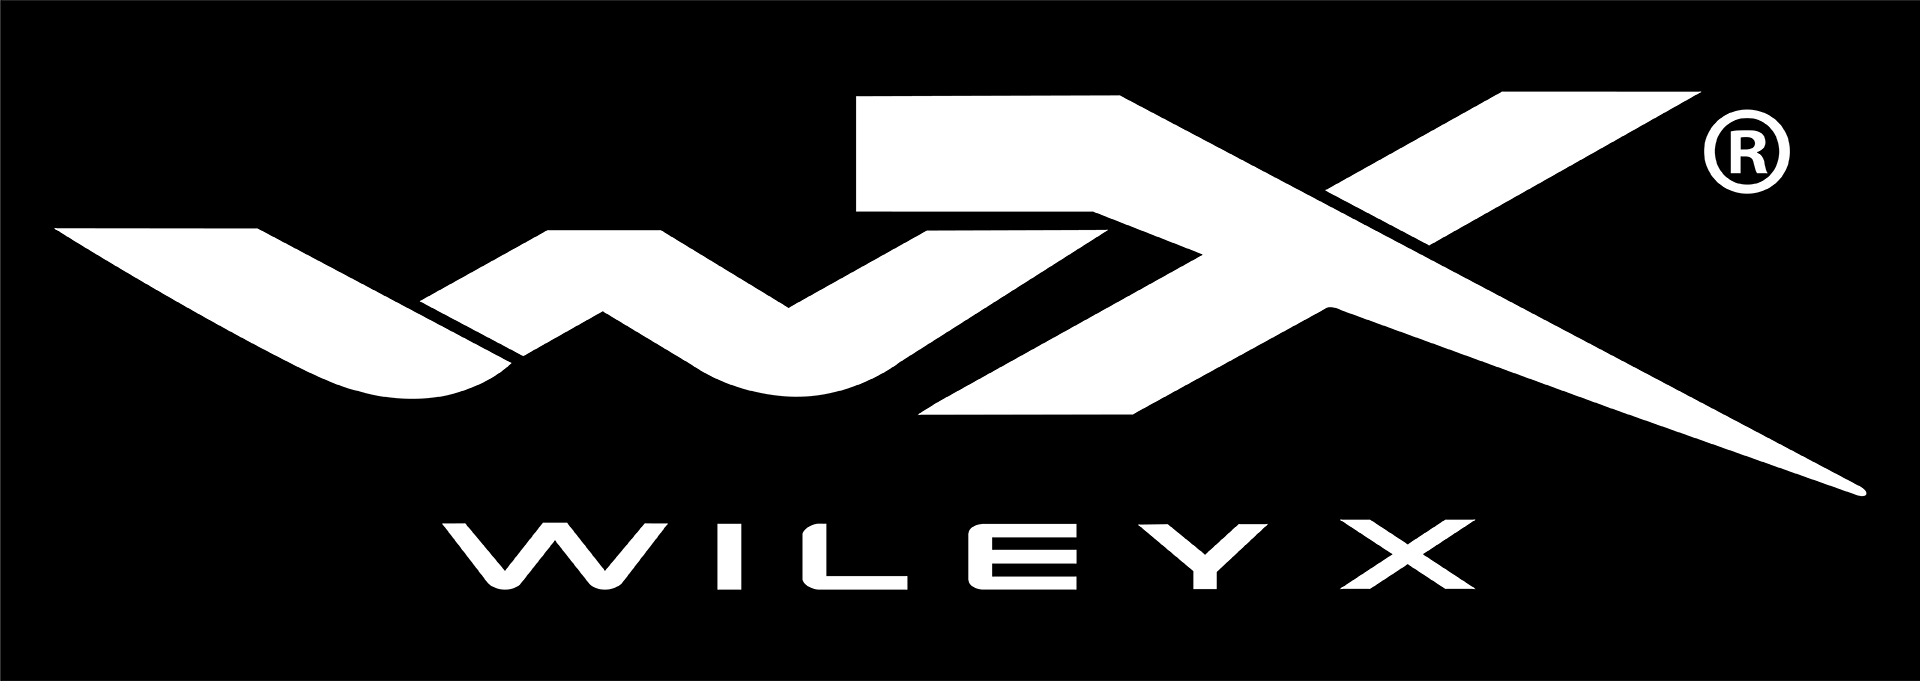 wiley x logo white